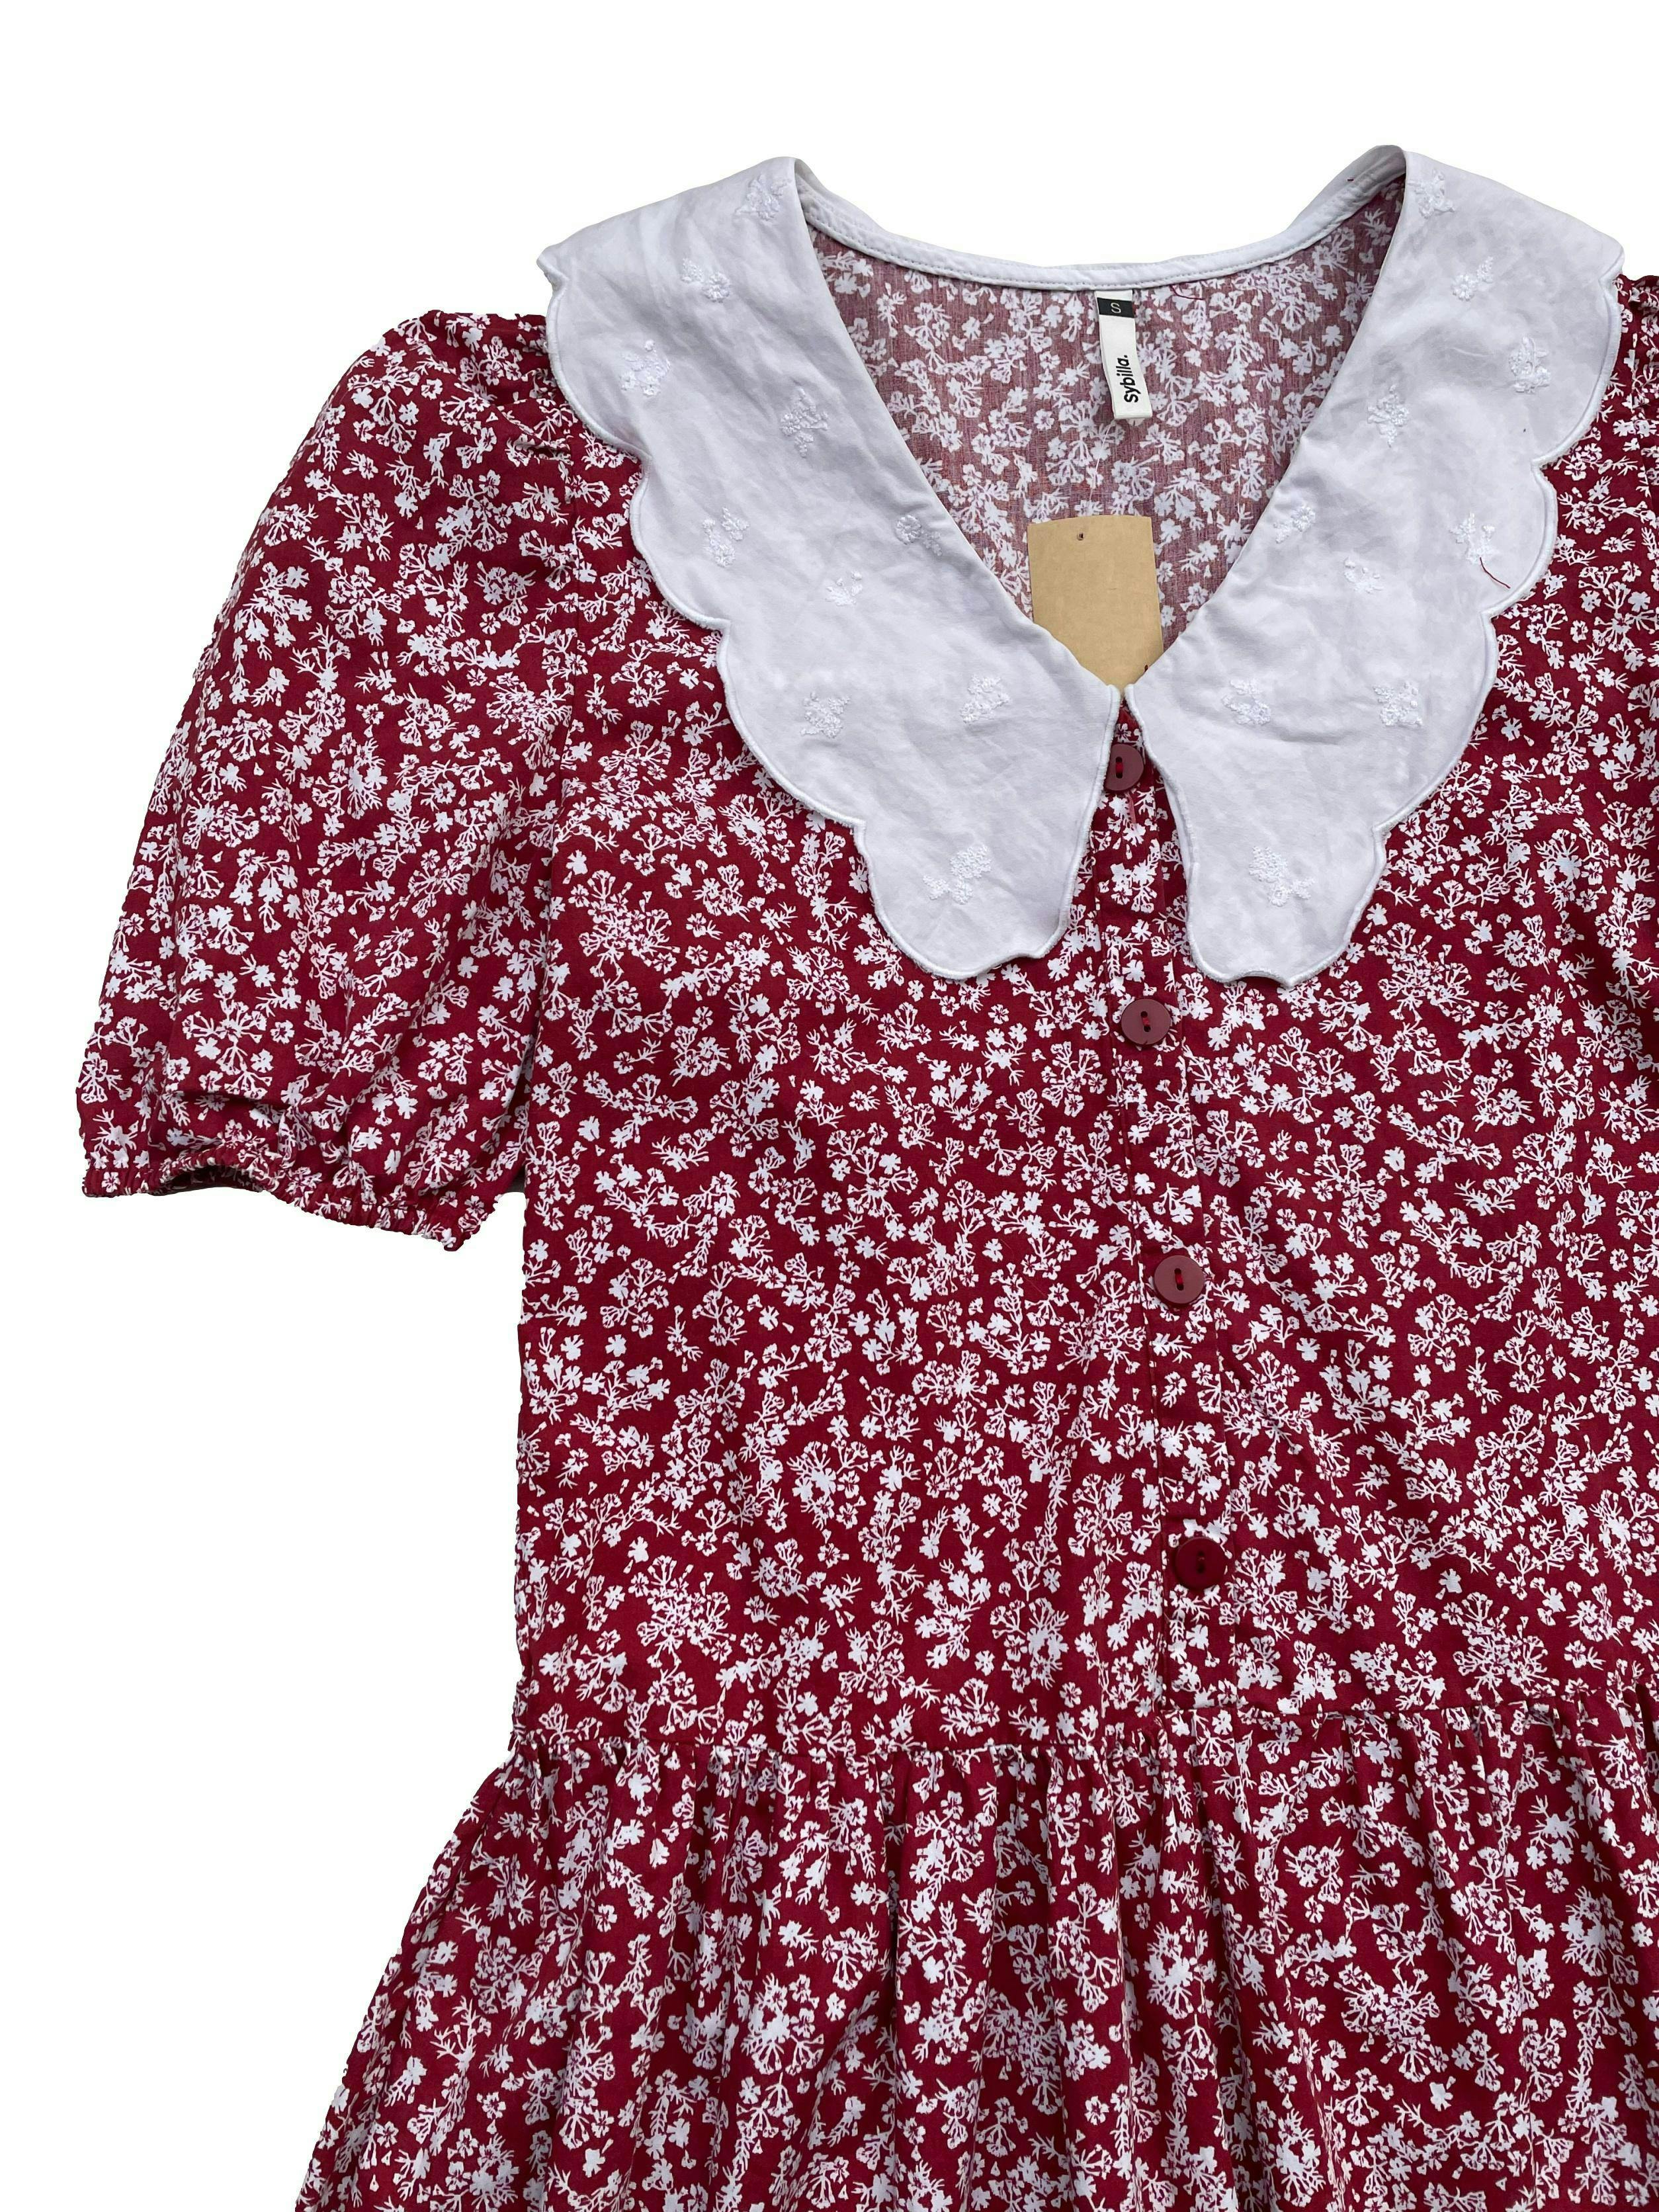 Vestido Sybilla rojo con florcitas, tela tipo camisa, maxicuello y botones delanteros. Busto: 90cm, largo: 76cm.